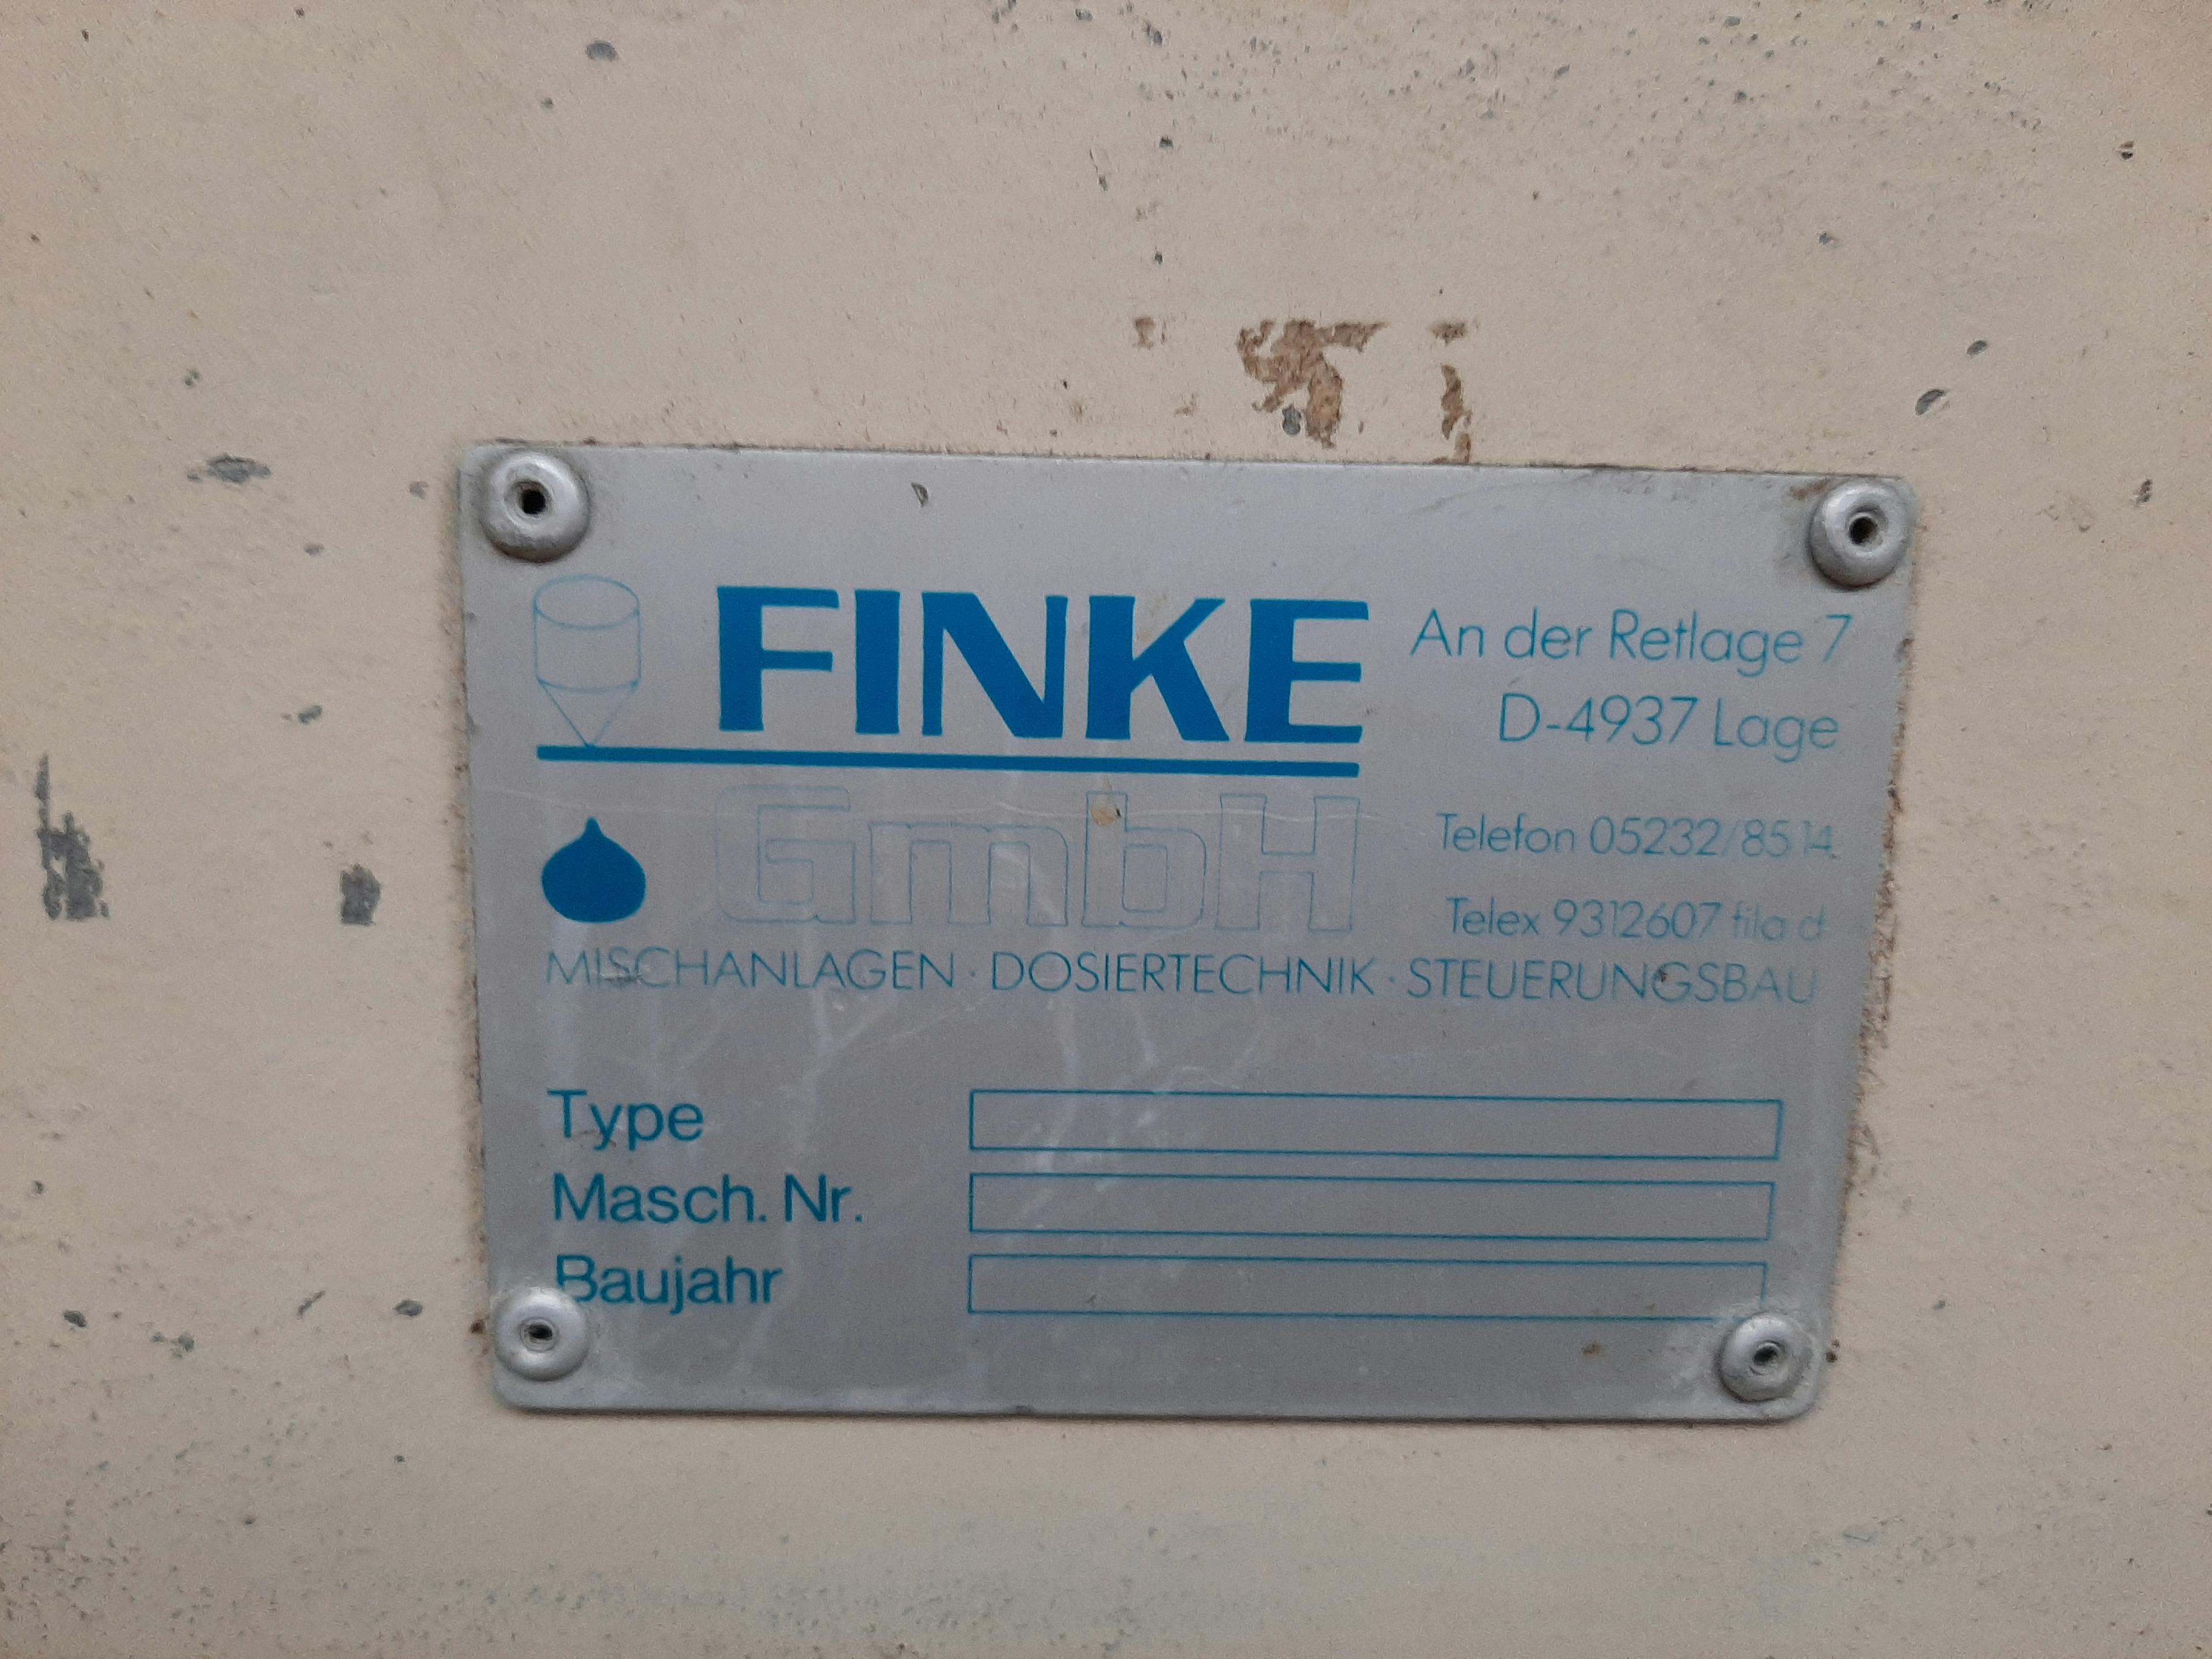 Finke - Vloeistofafvuller - image 3